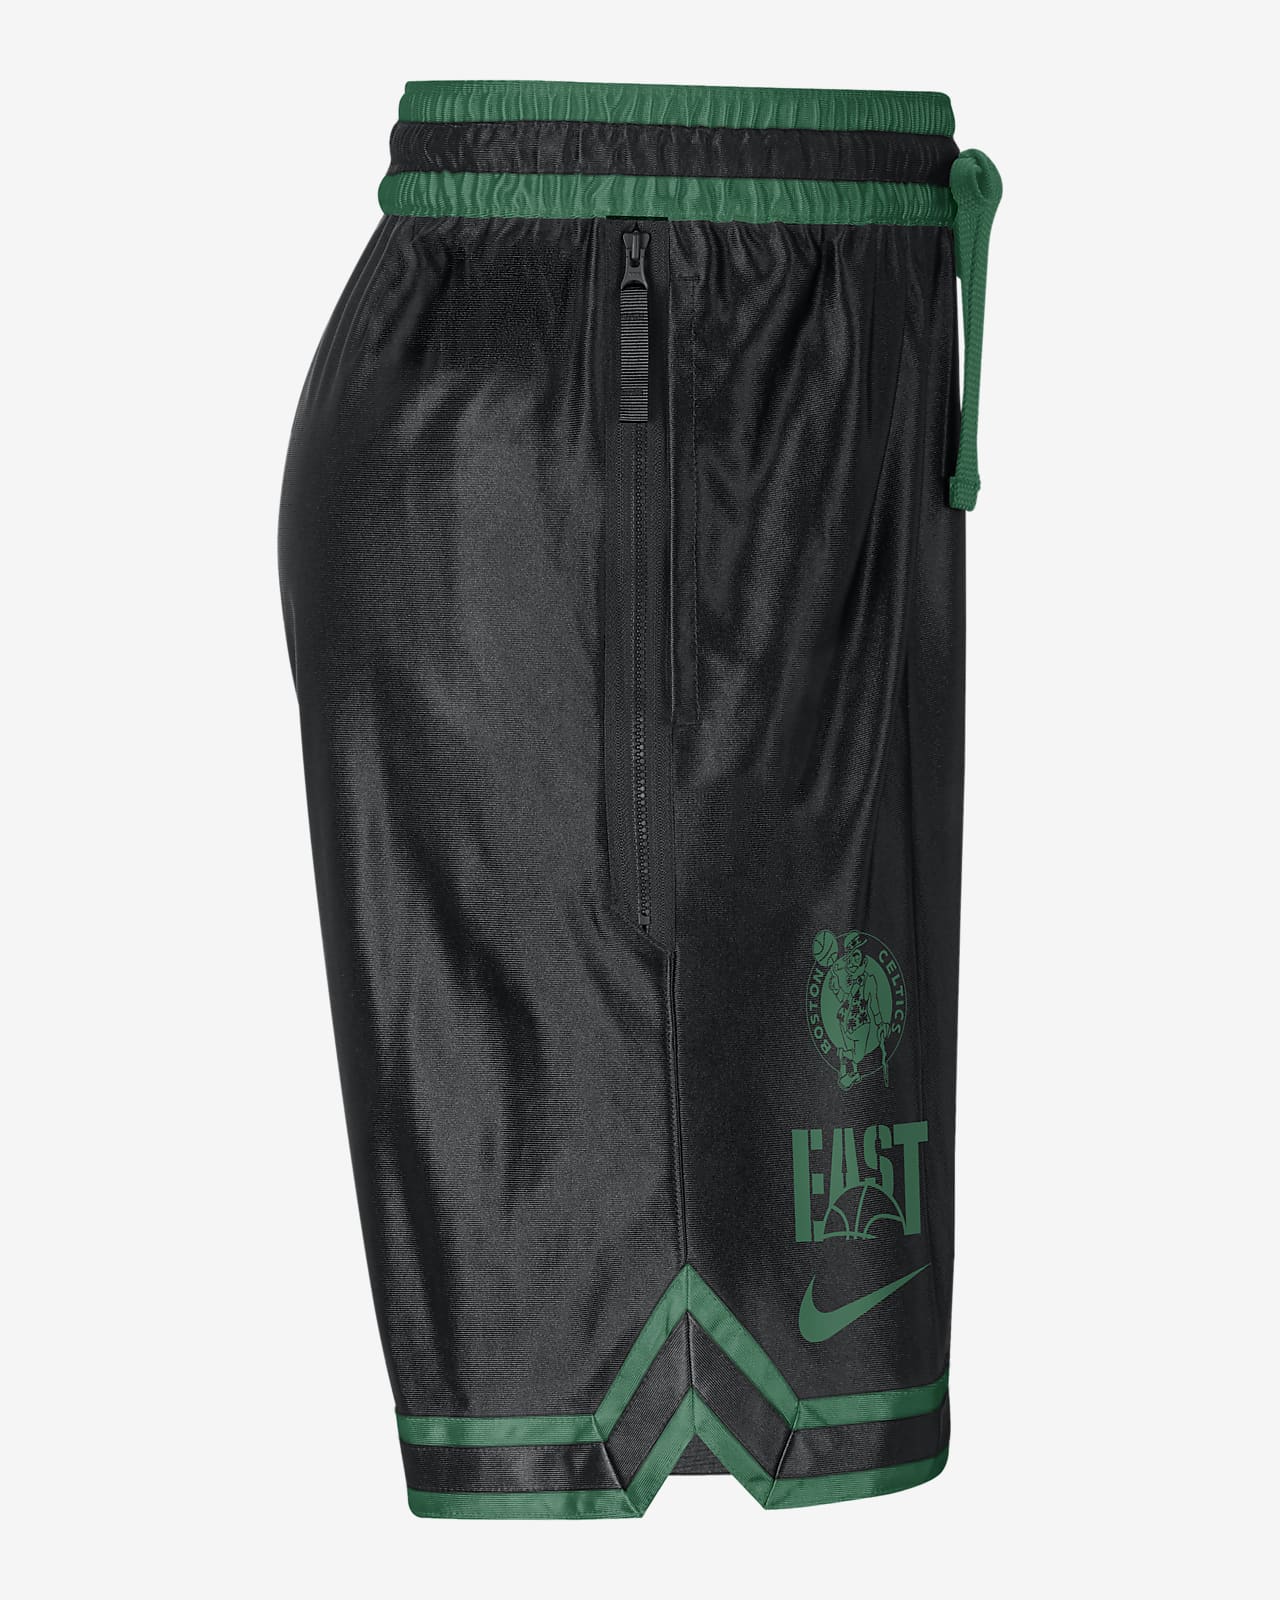 Basketball Shorts - NBA teams printed design / FREE Shipping!